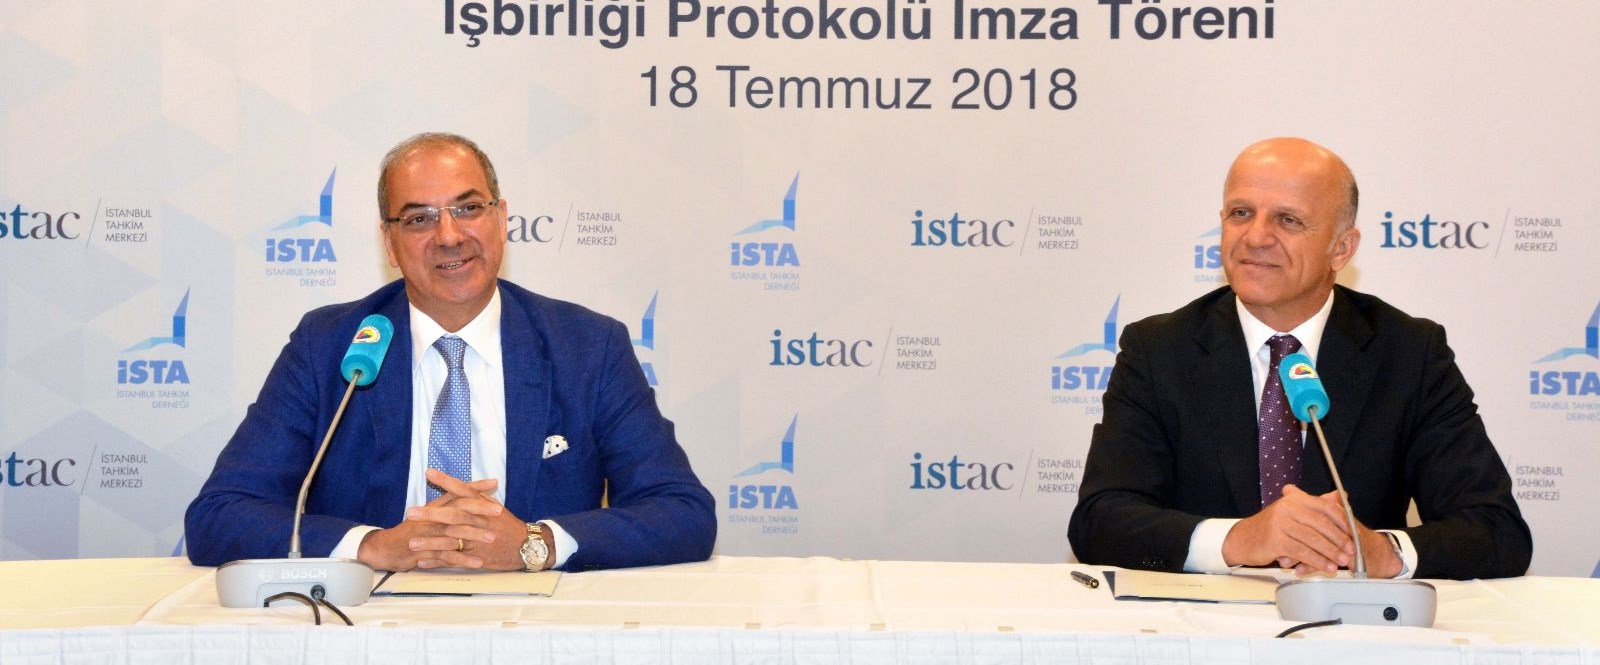 İstanbul Tahkim Merkezi ile İstanbul Tahkim Derneği protokol imzaladı